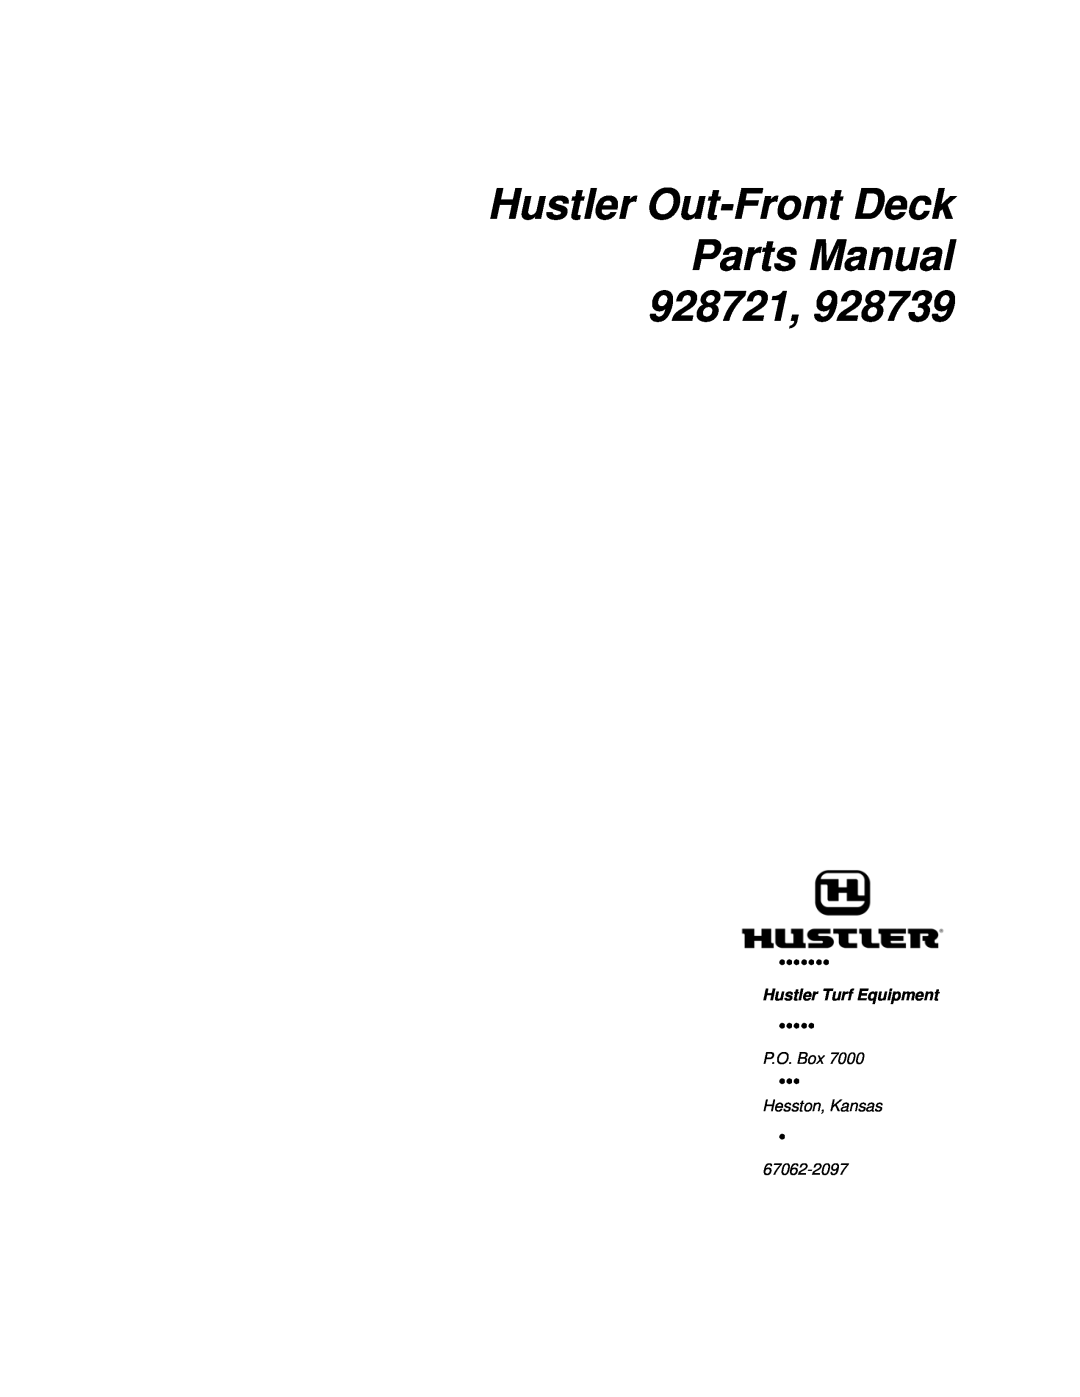 Hustler Turf manual Hustler Out-Front Deck Parts Manual 928721, Hustler Turf Equipment, P.O. Box, Hesston, Kansas 